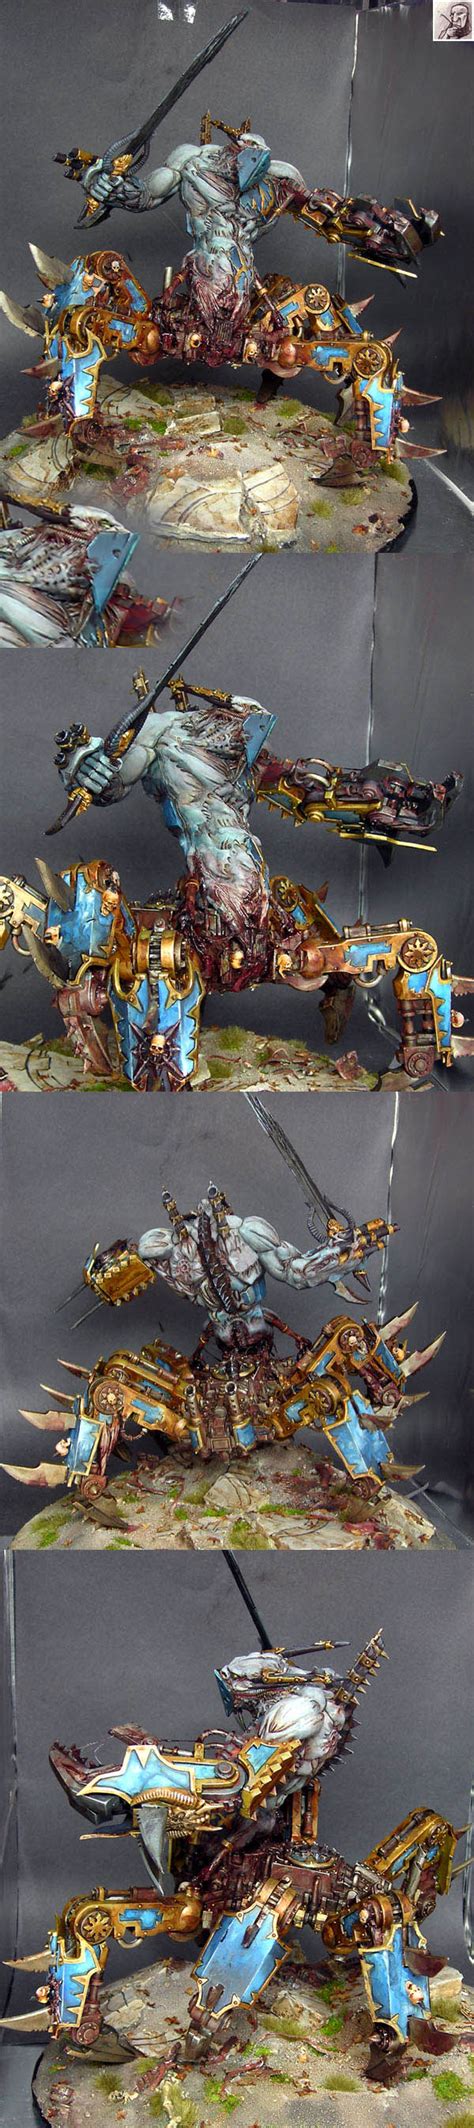 Chaos Figurine Warhammer Warhammer K Art Warhammer Models